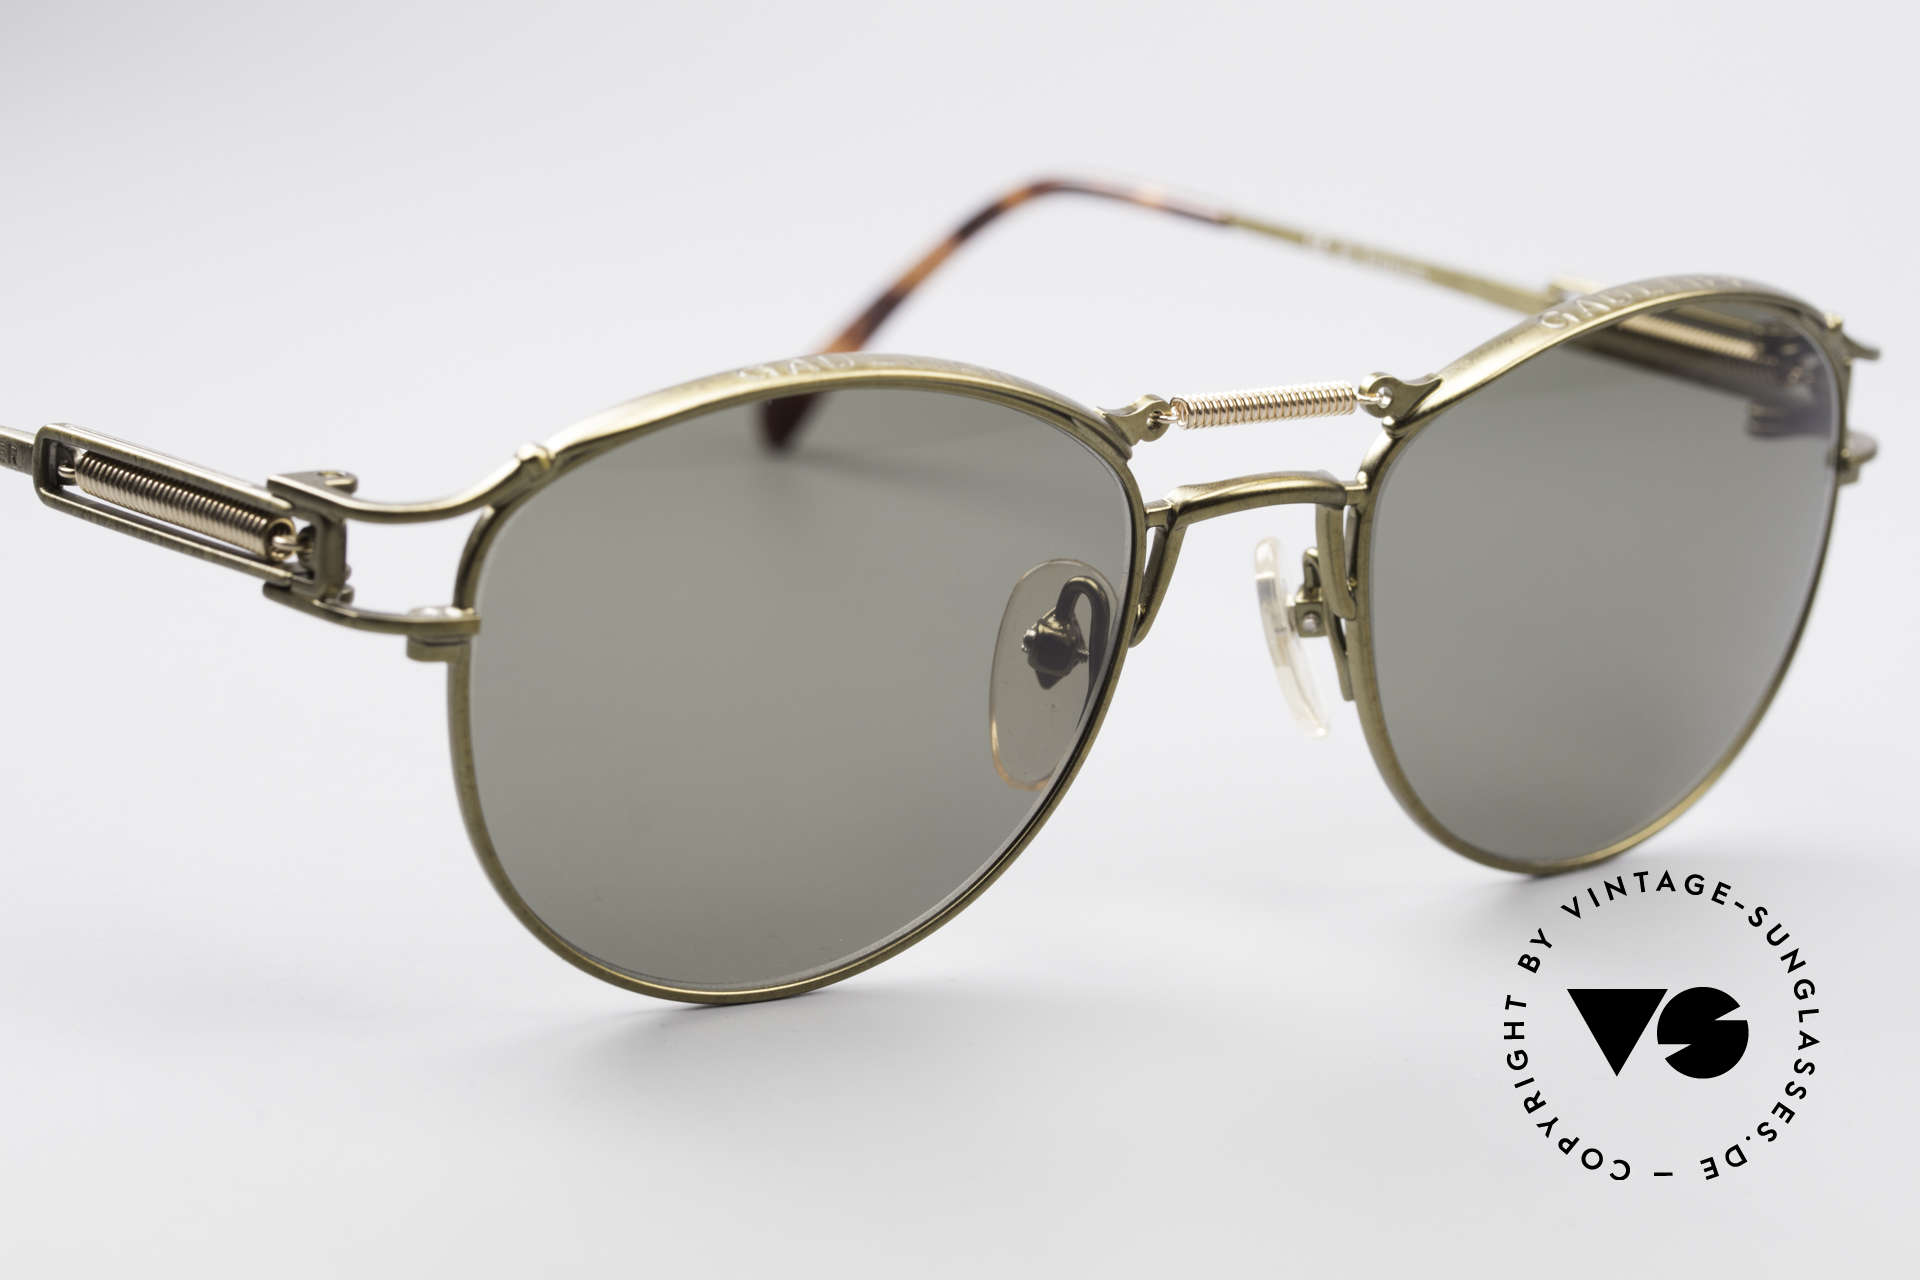 Sunglasses Jean Paul Gaultier 56-5107 Steampunk Panto Sunglasses